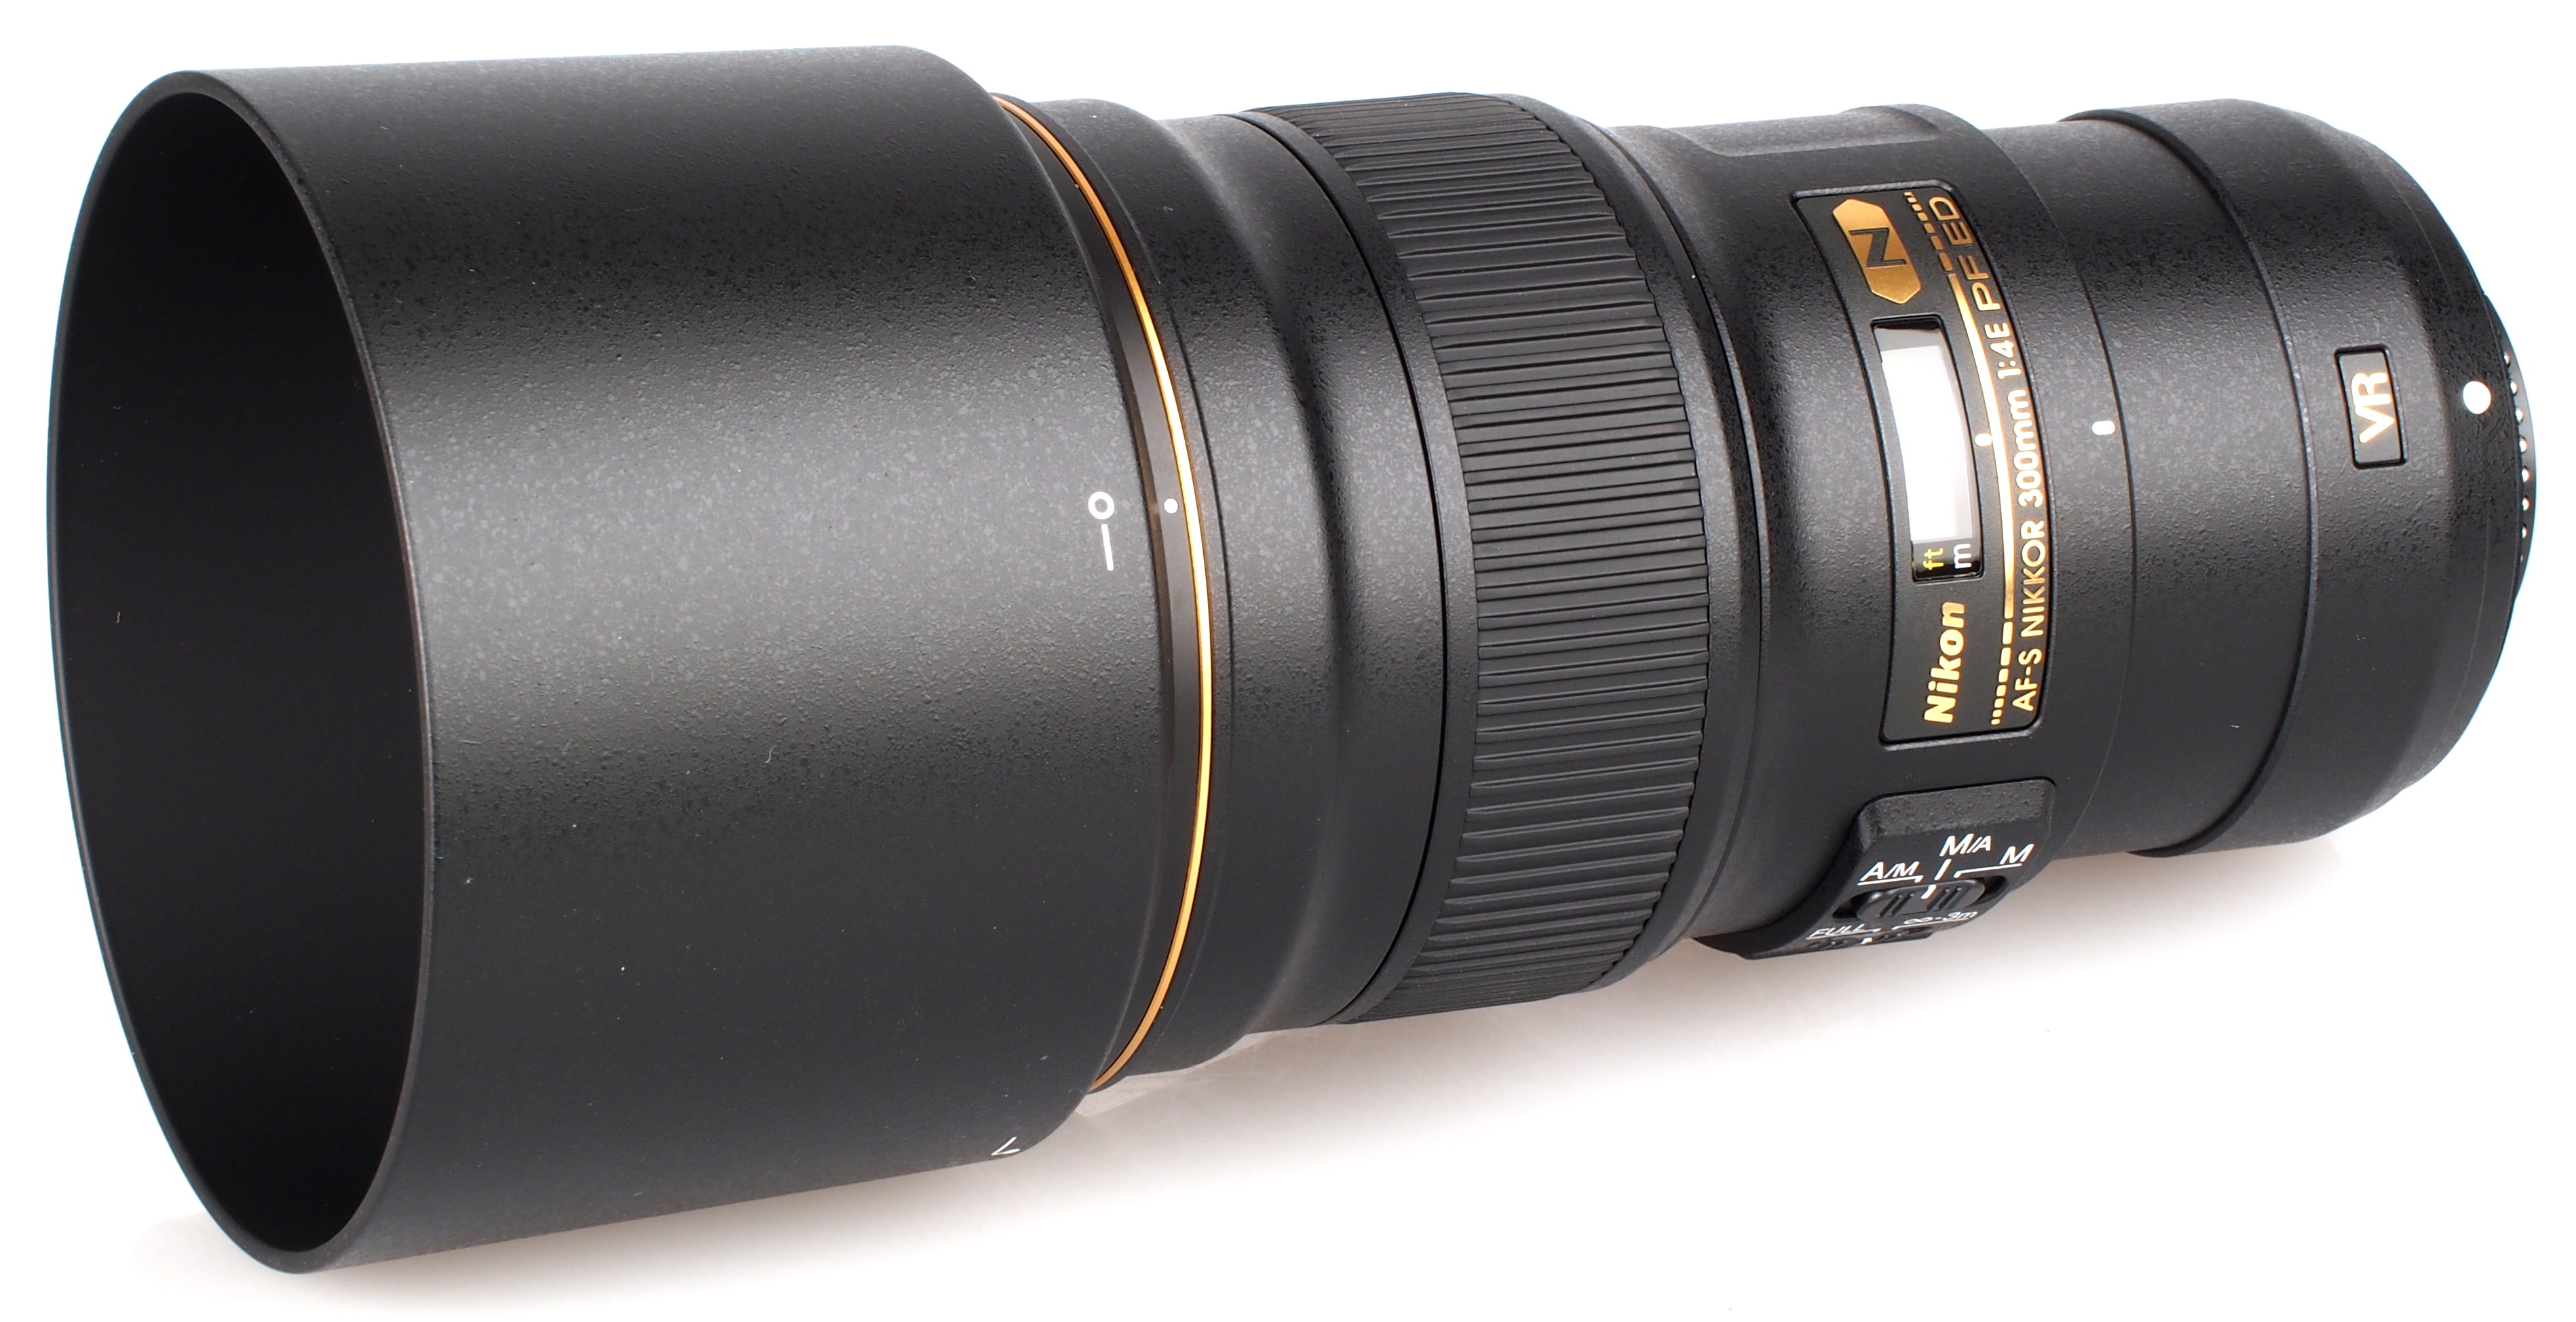 Nikon AF-S NIKKOR 300mm f/4E PF ED VR Lens Review